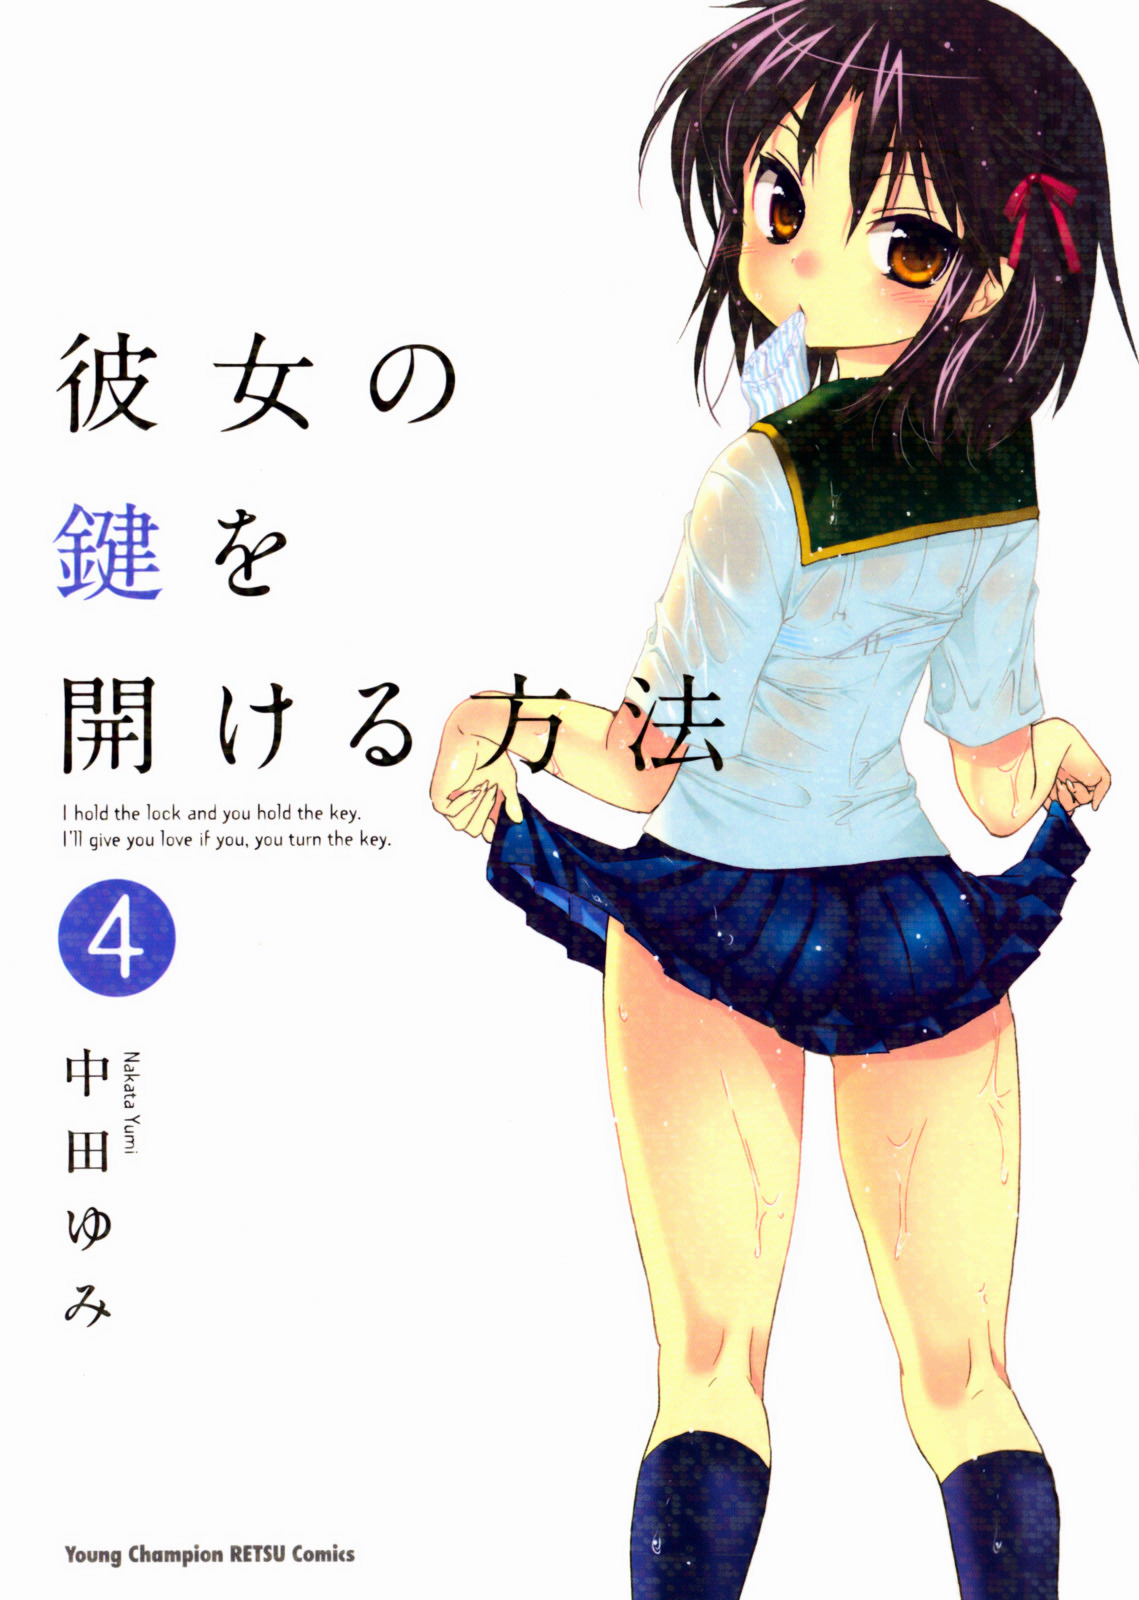 Kanojo No Kagi Wo Akeru Houhou - Page 1